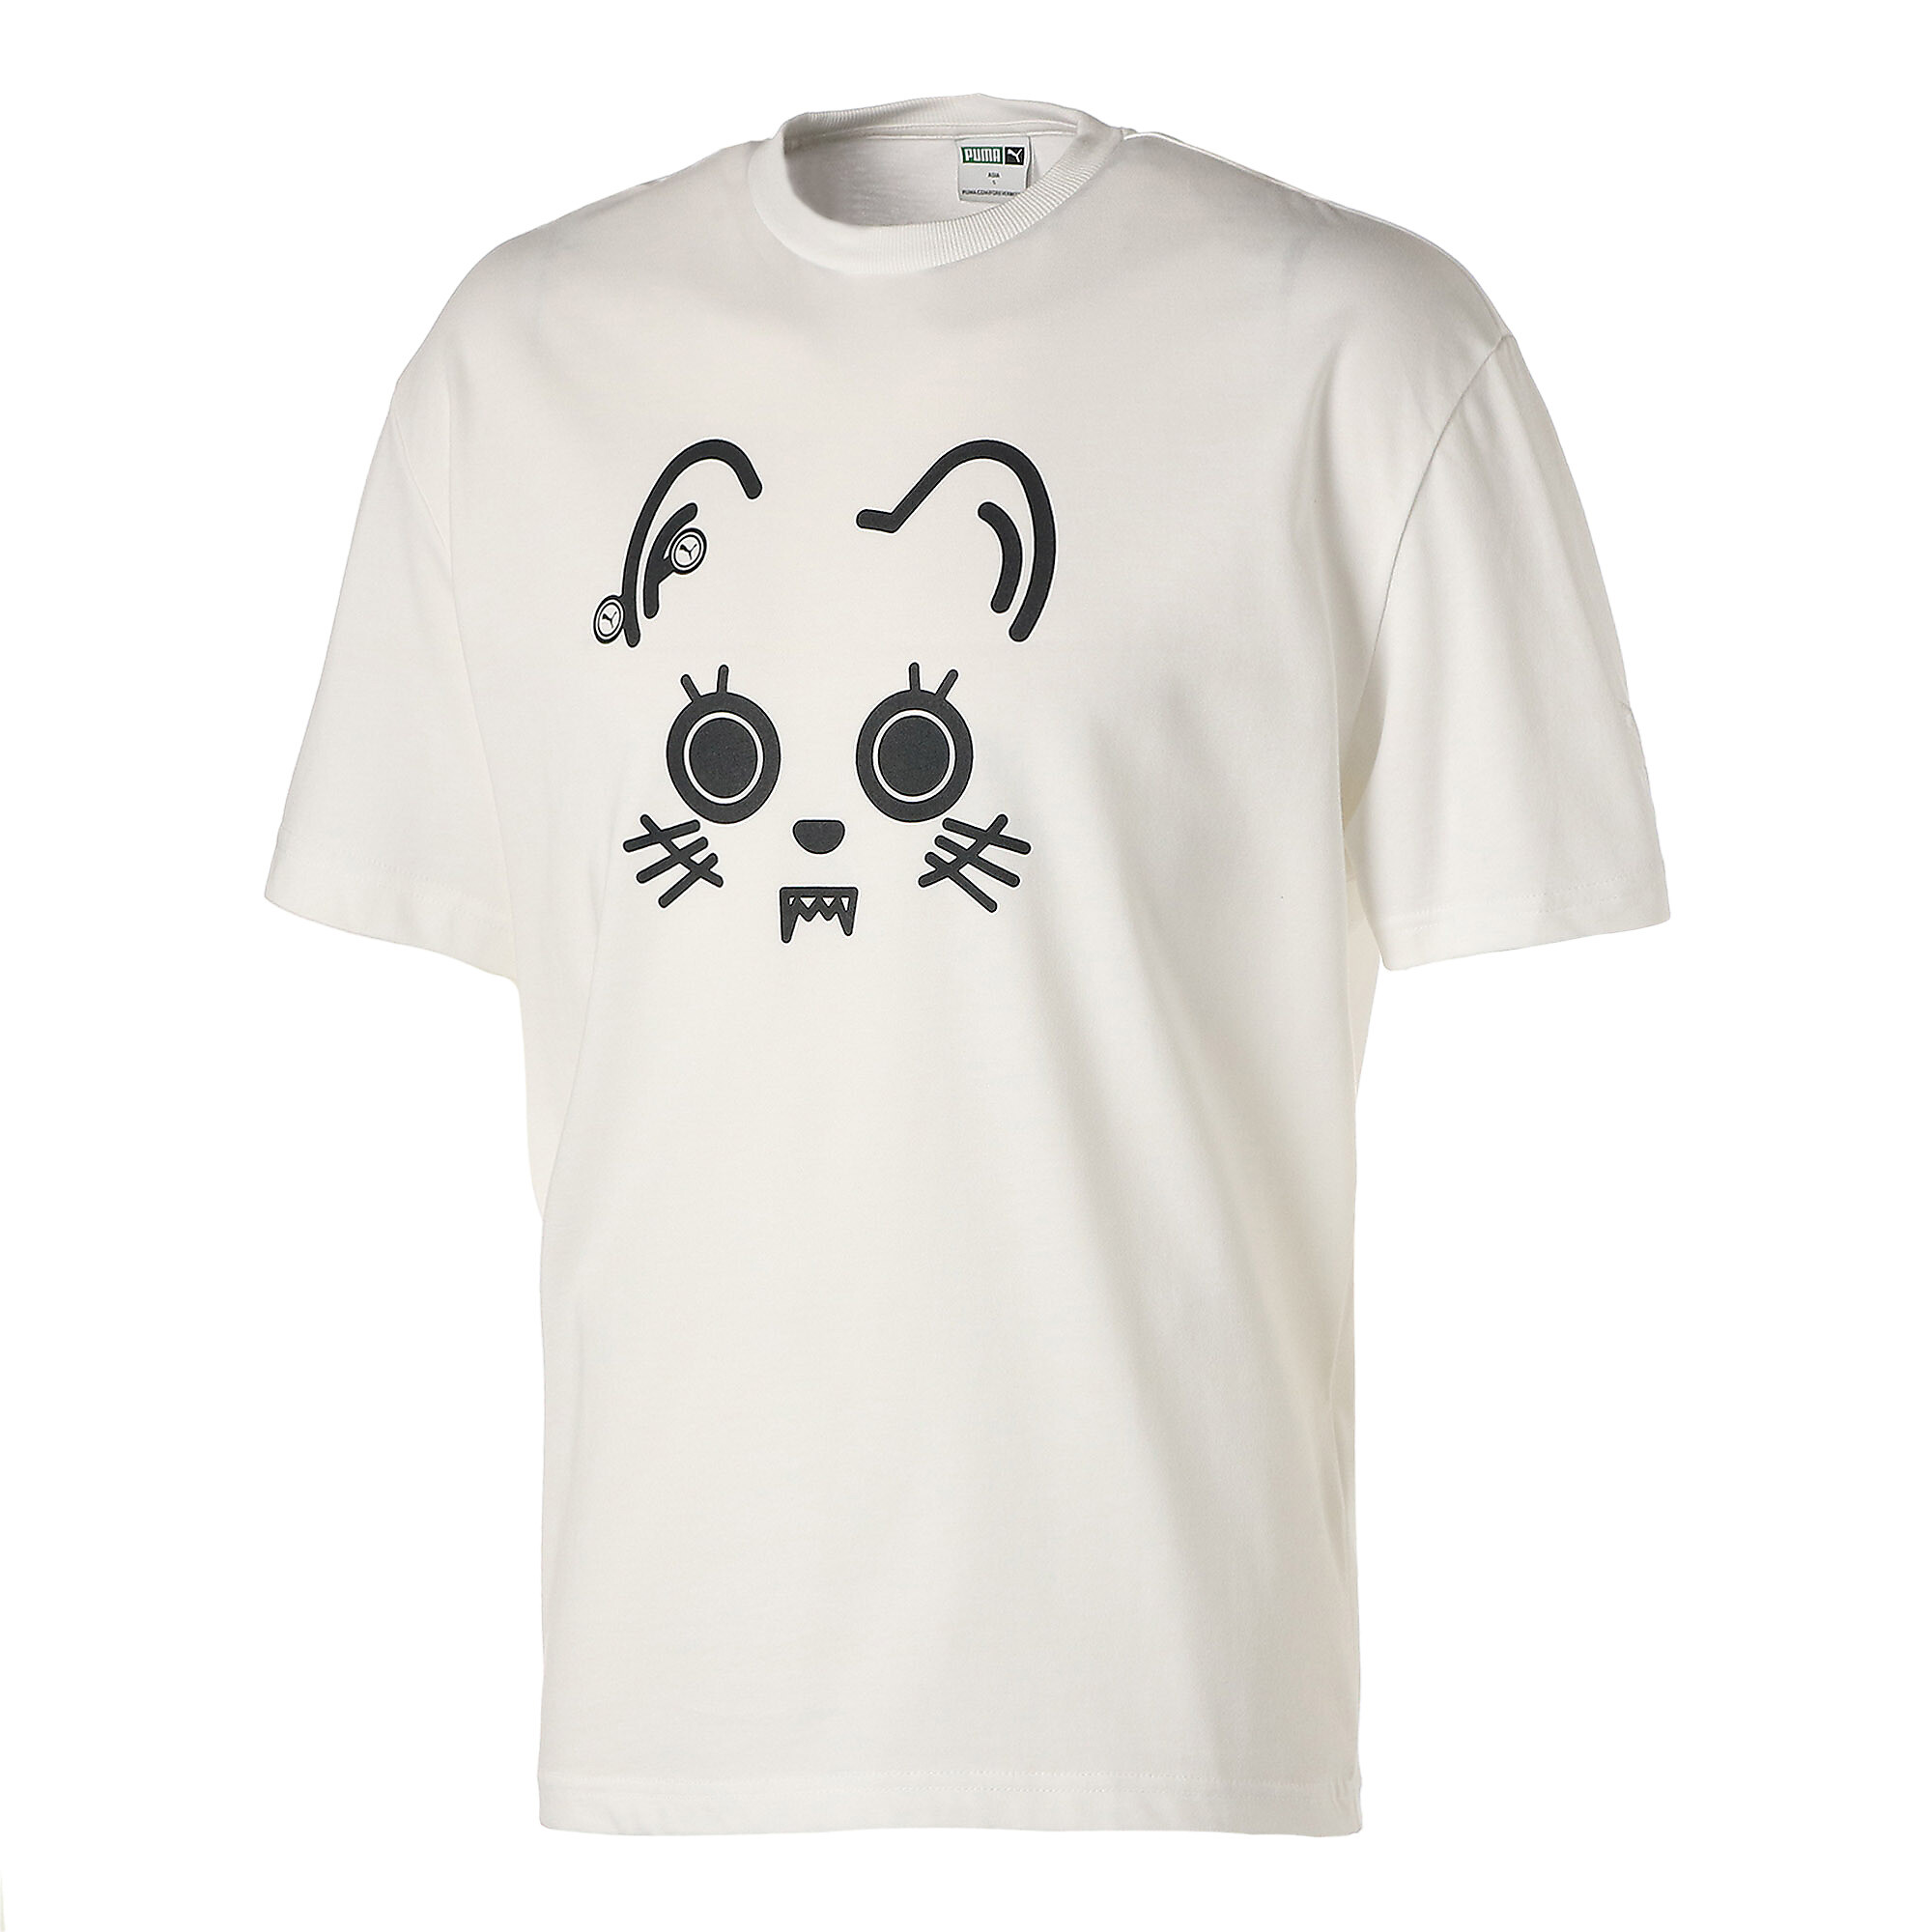 ＜プーマ公式通販＞ プーマ メンズ ACTIVE ビッグ ロゴ 半袖 Tシャツ メンズ Gray Violet ｜PUMA.com